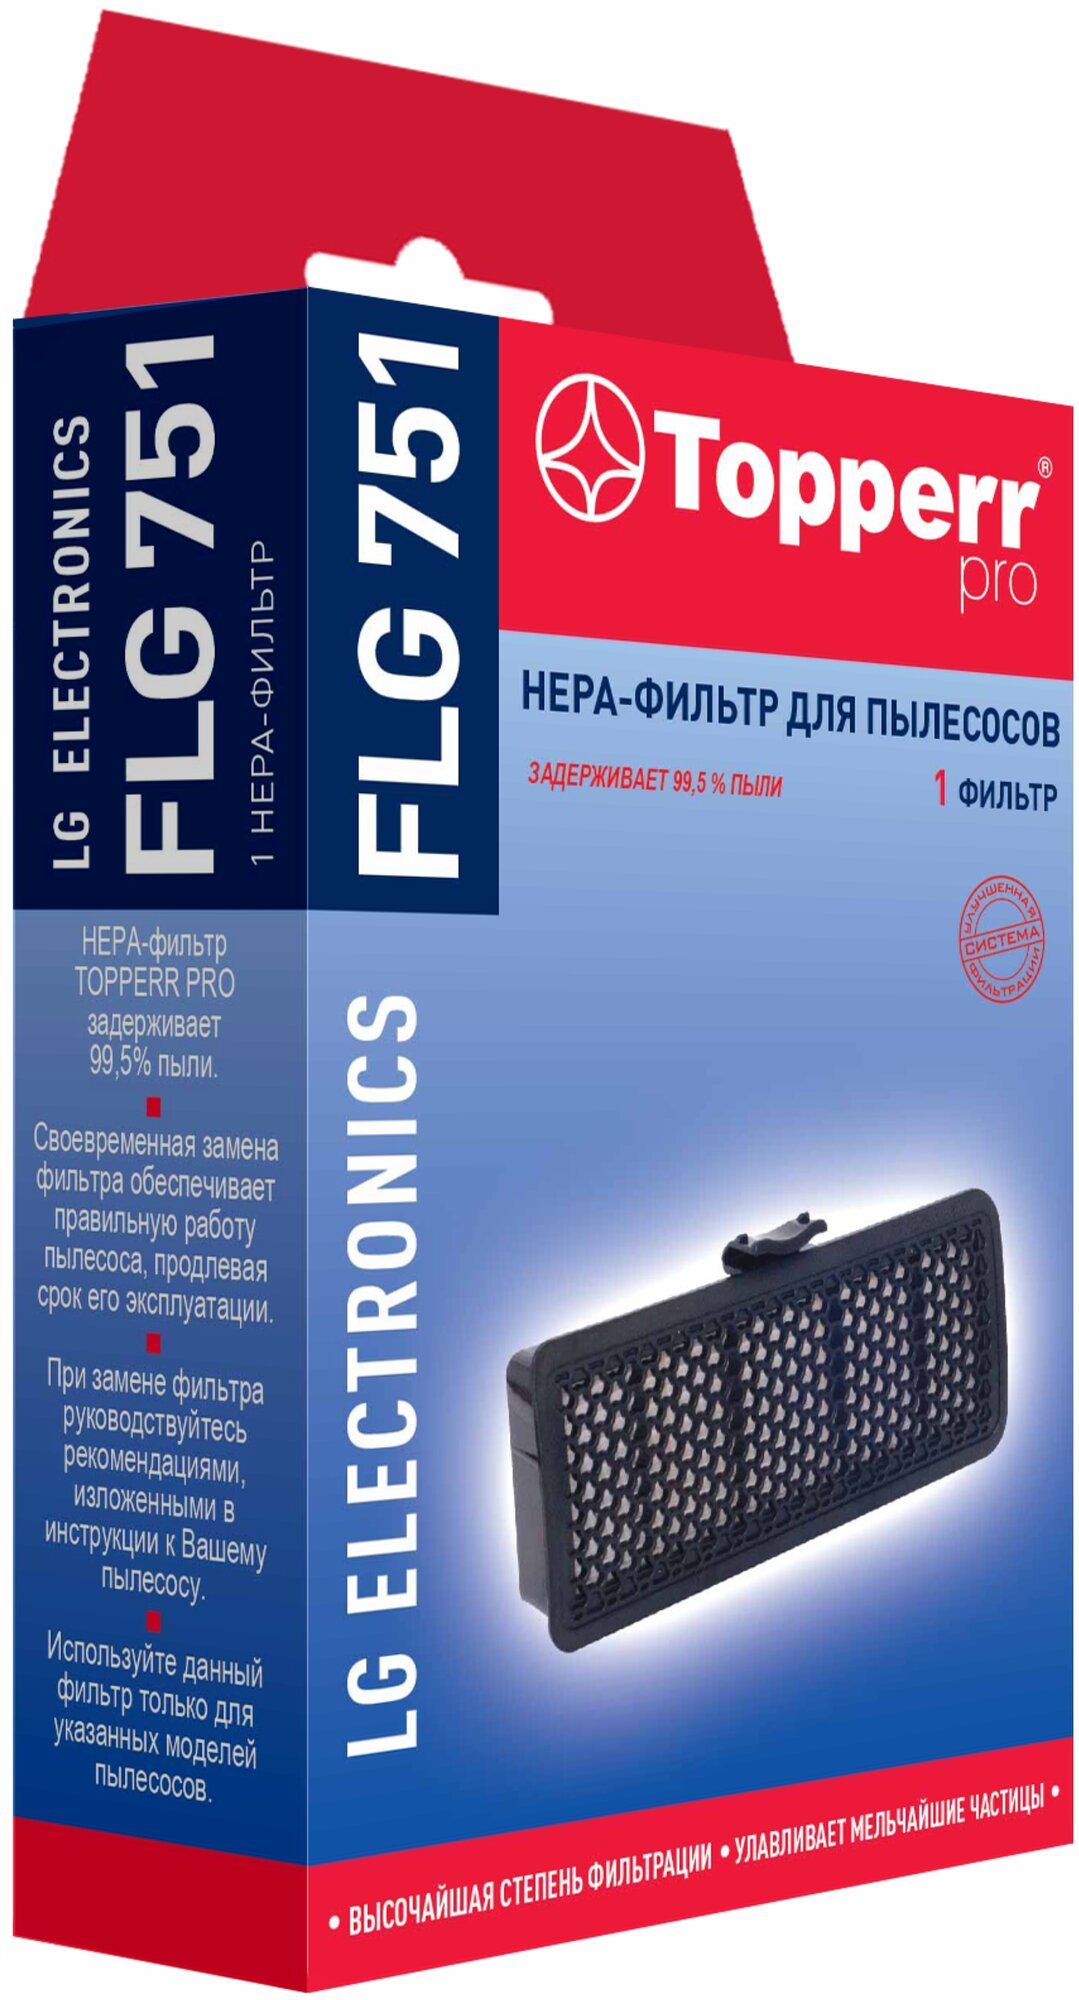 HEPA фильтр для пылесоса Topperr - фото №2